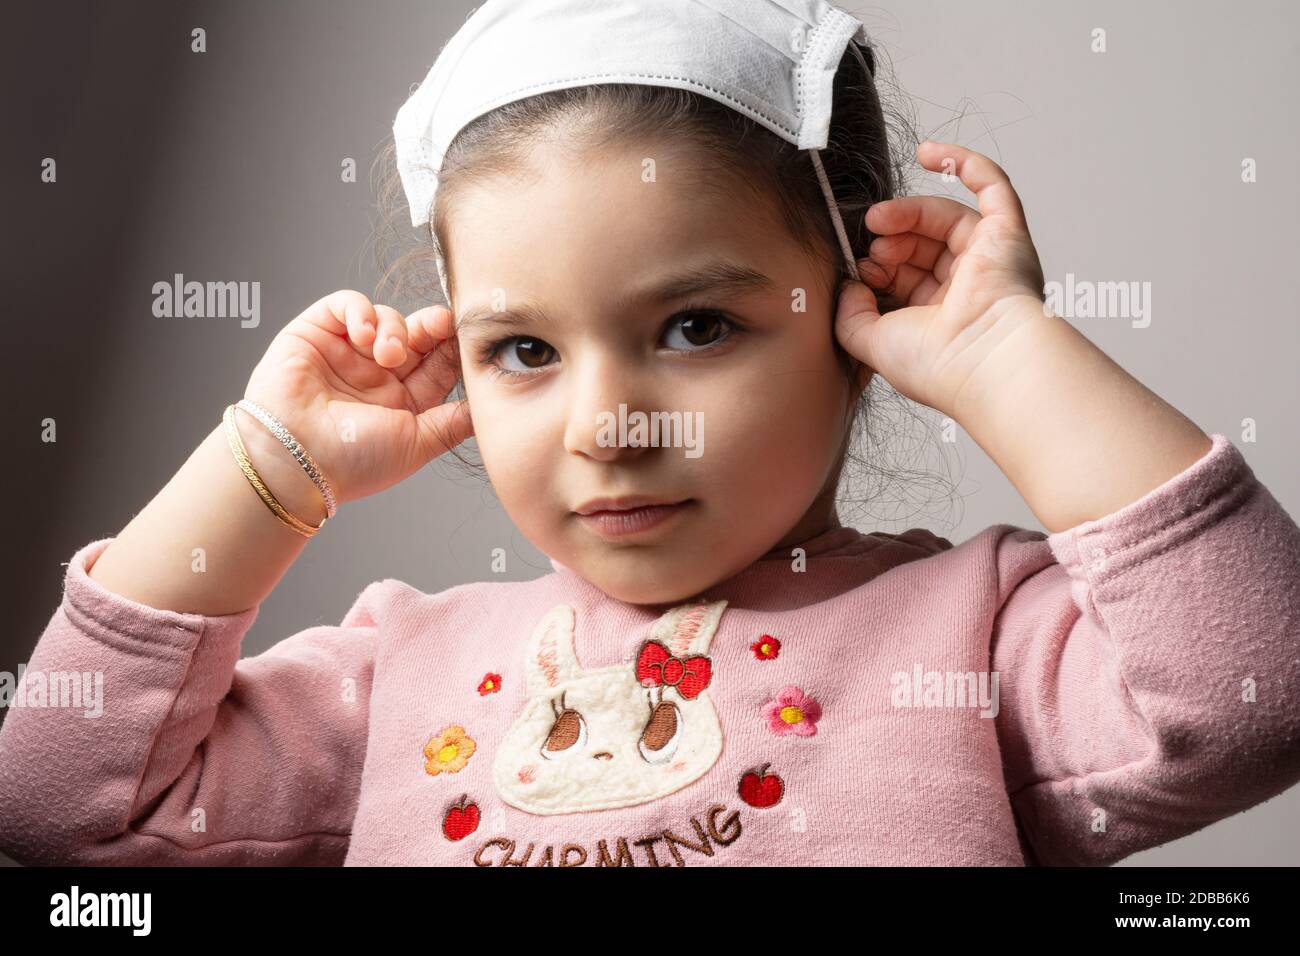 Ritratto della bambina con maschera medica sulla sua testa, epidemia di coronavirus epidemico concetto Foto Stock